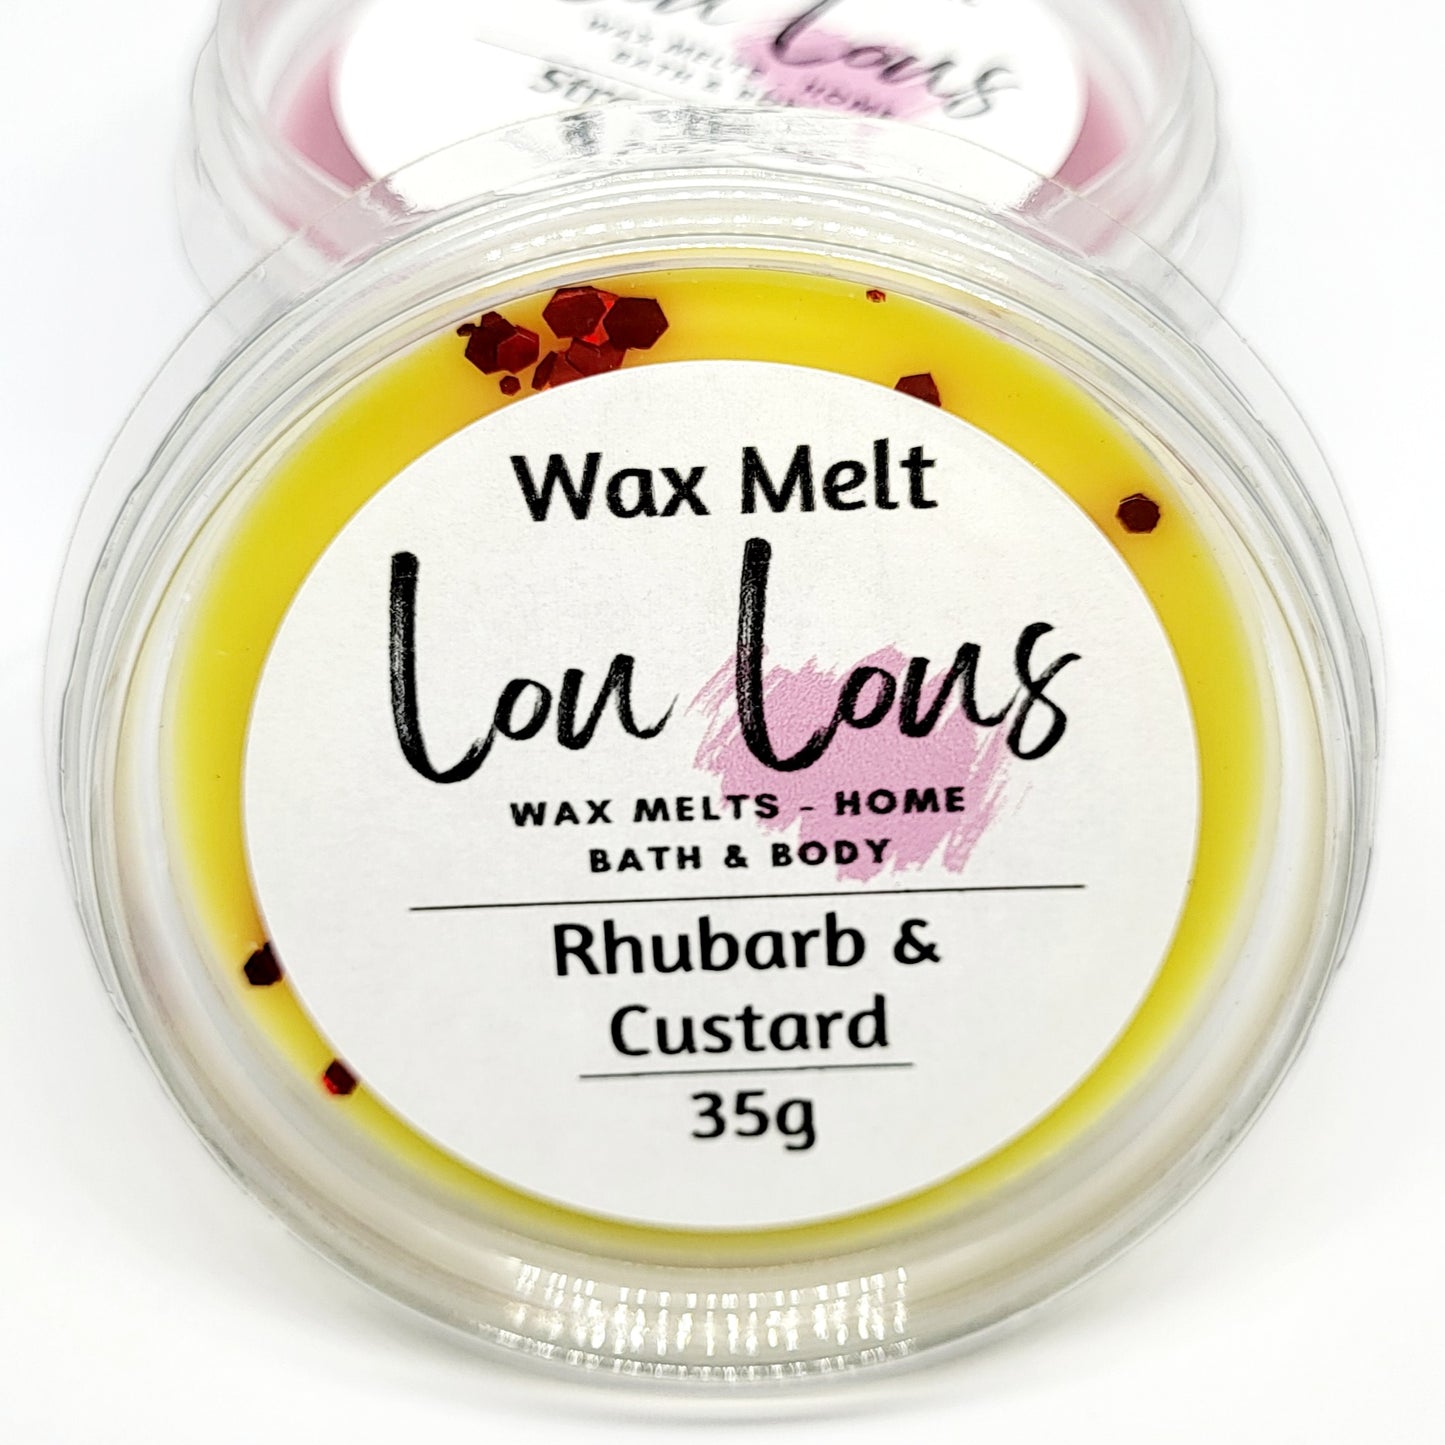 Rhubarb & Custard Wax Melt Pot